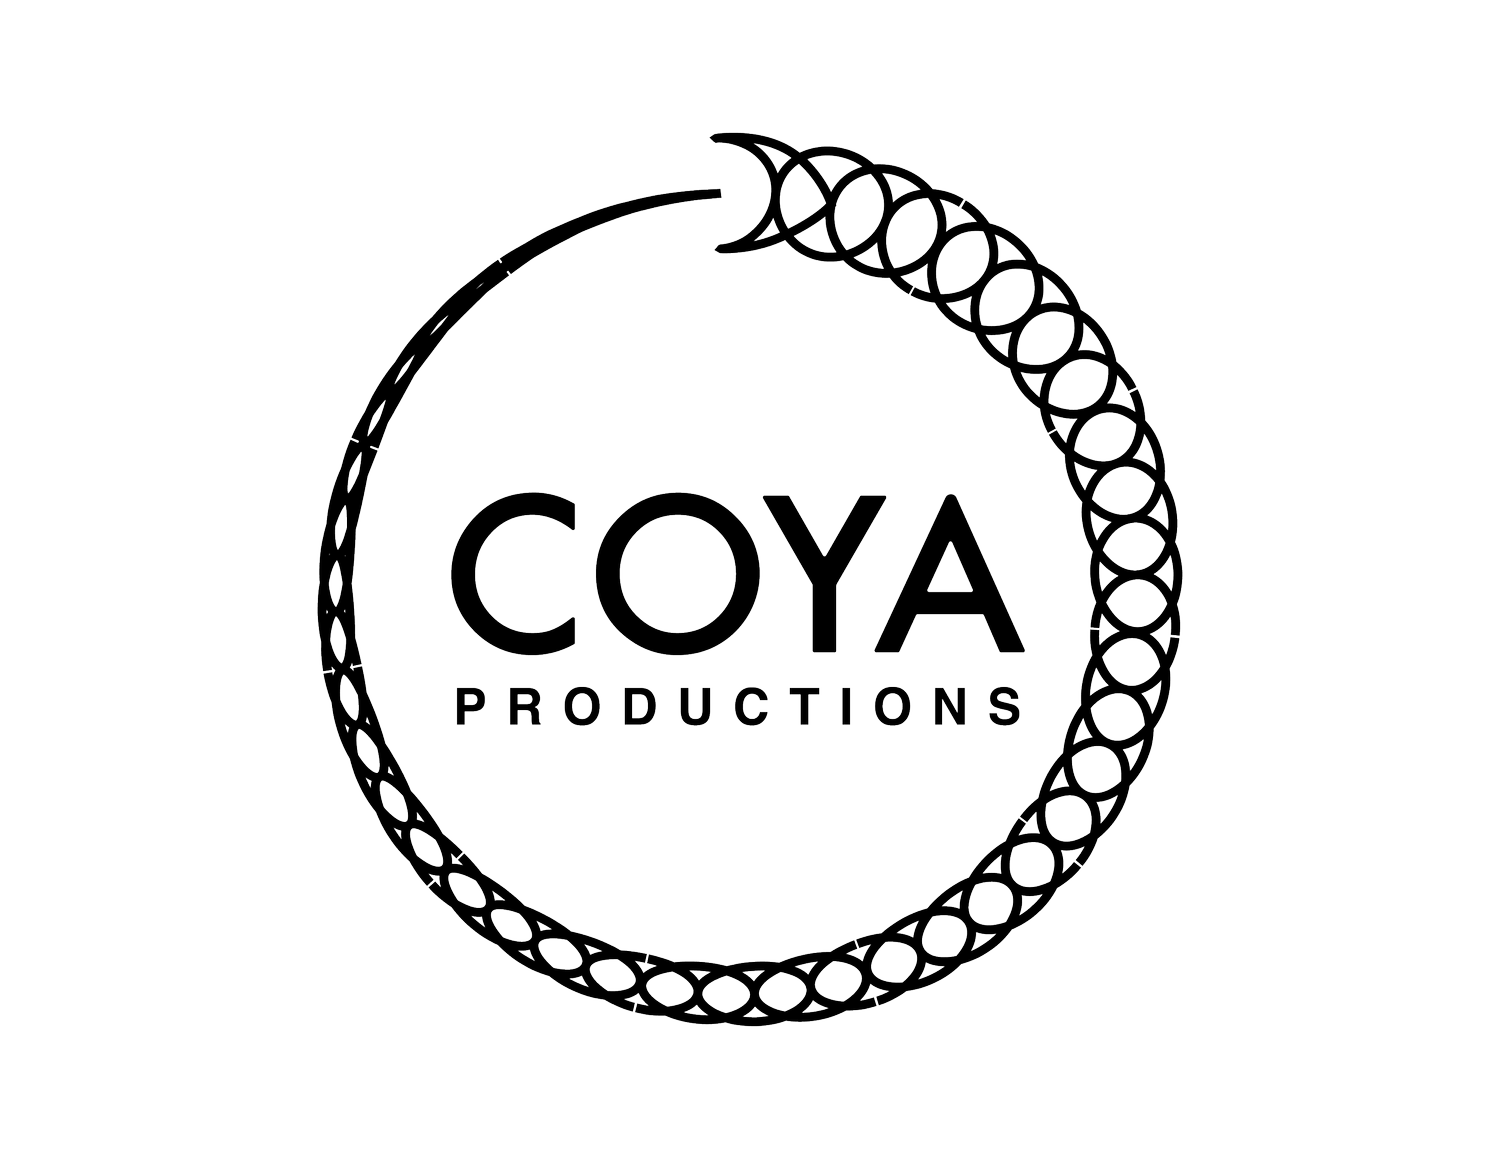 COYA Productions